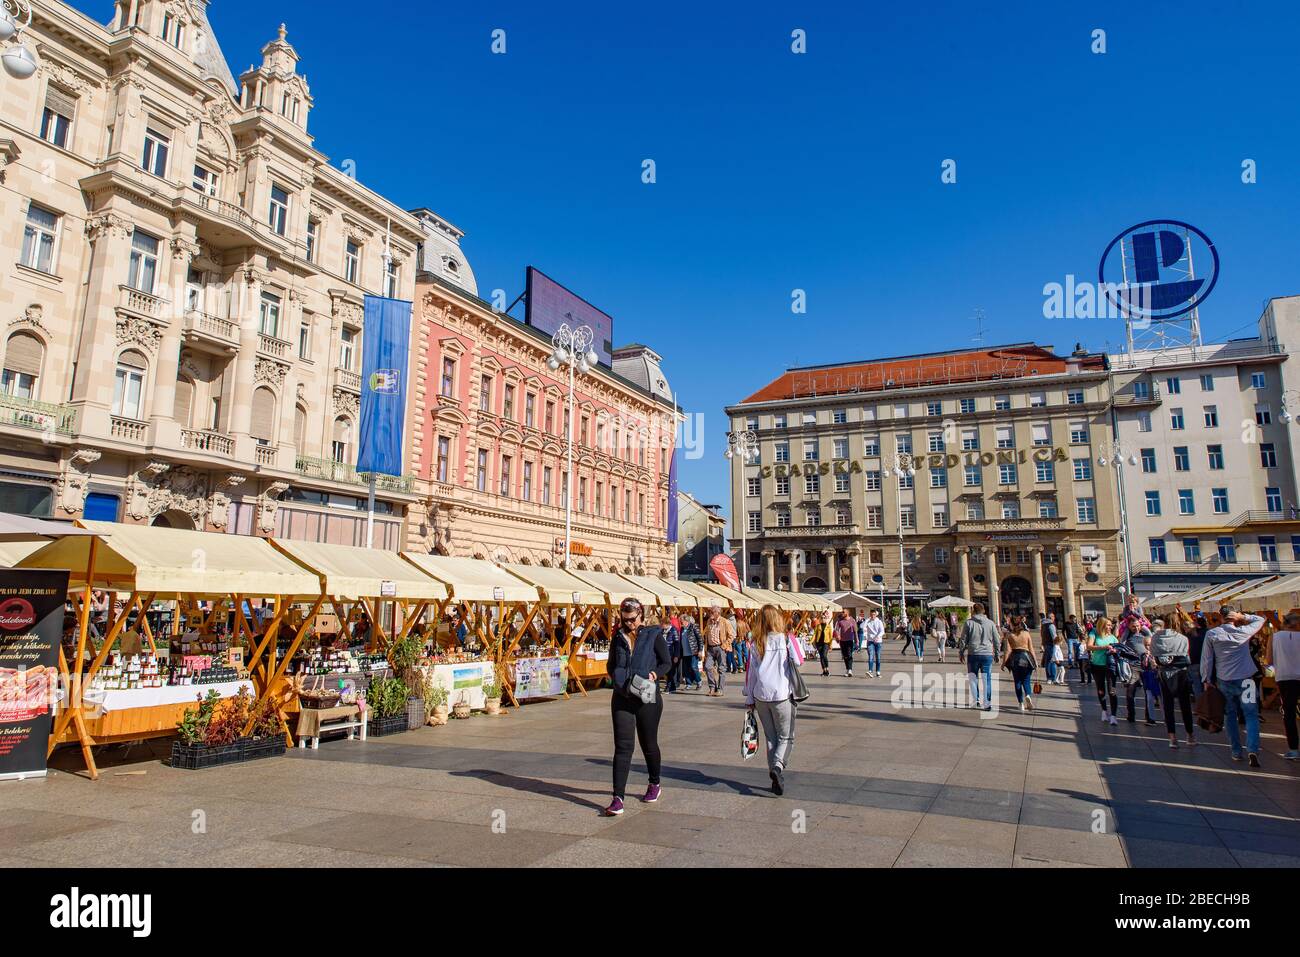 Le marché de la place Ban Jelačić, la place centrale de la ville de Zagreb, Croatie Banque D'Images